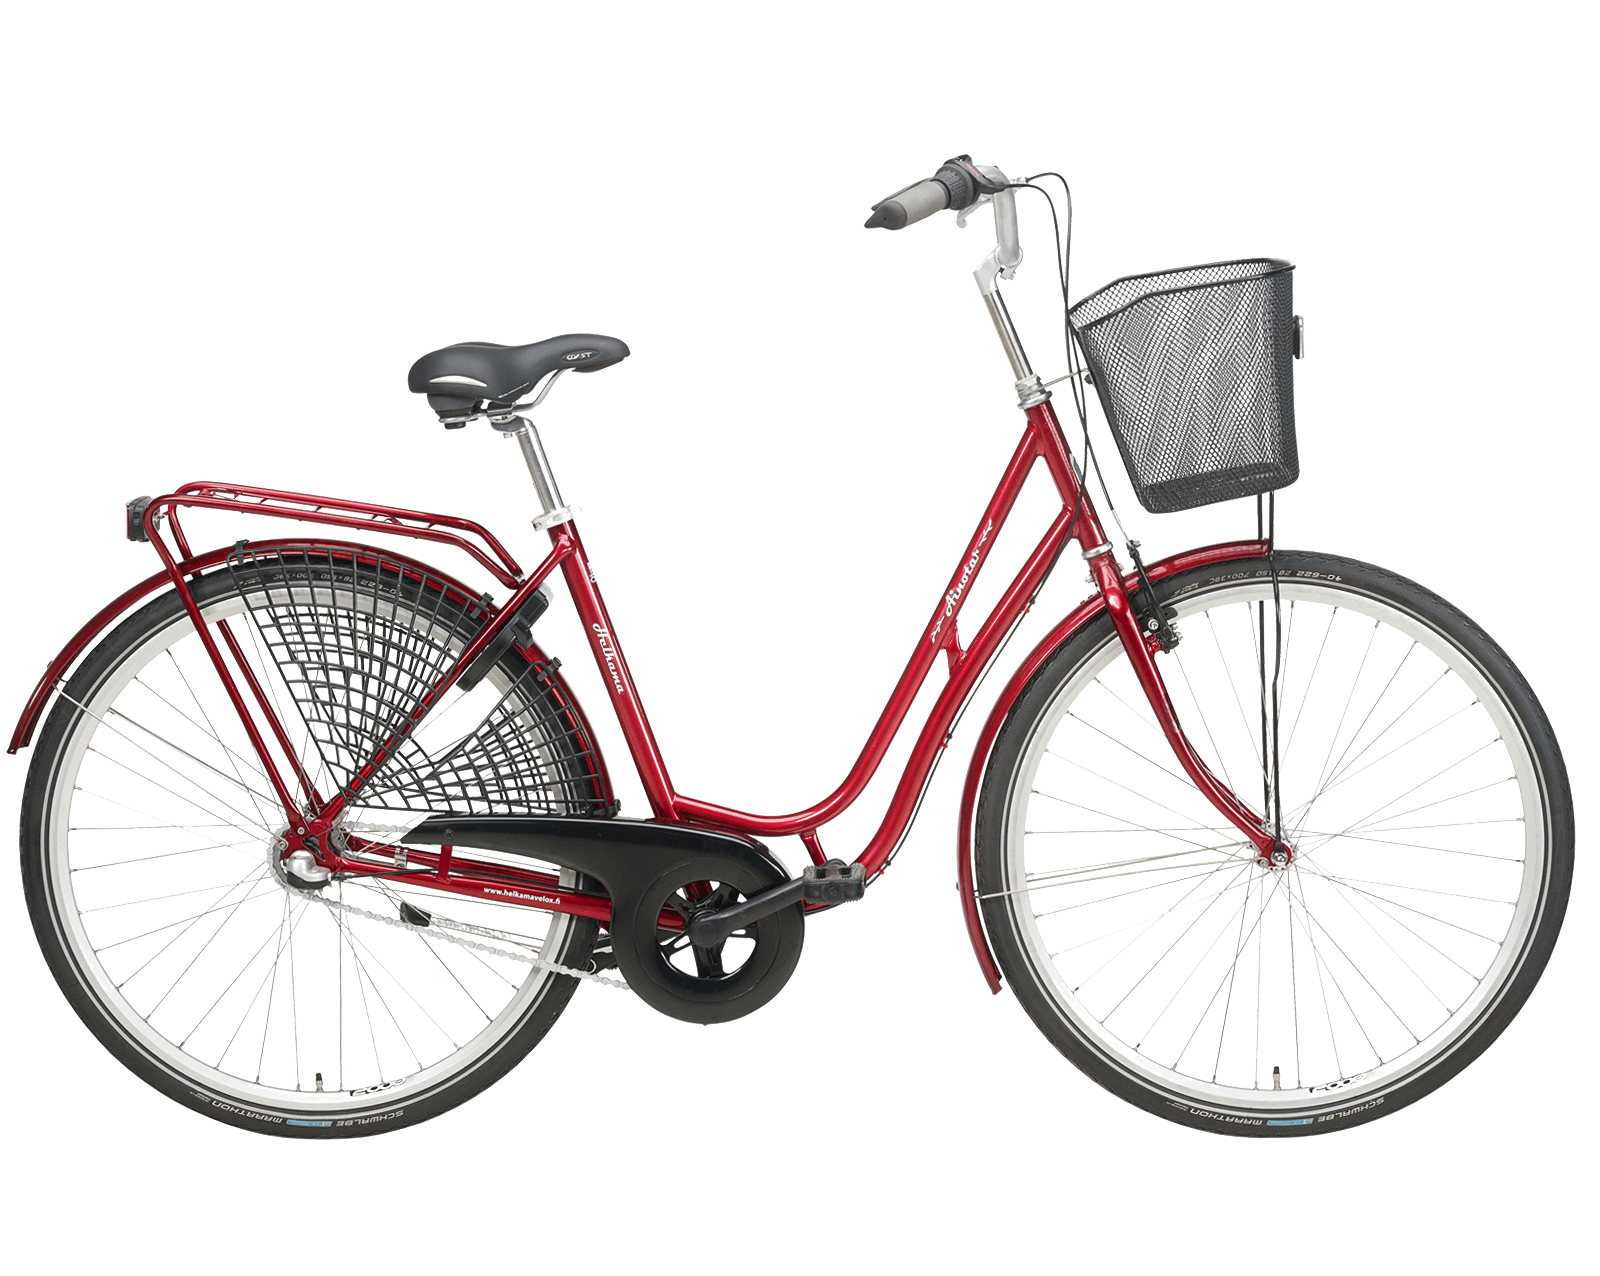 Rental bicycle standard